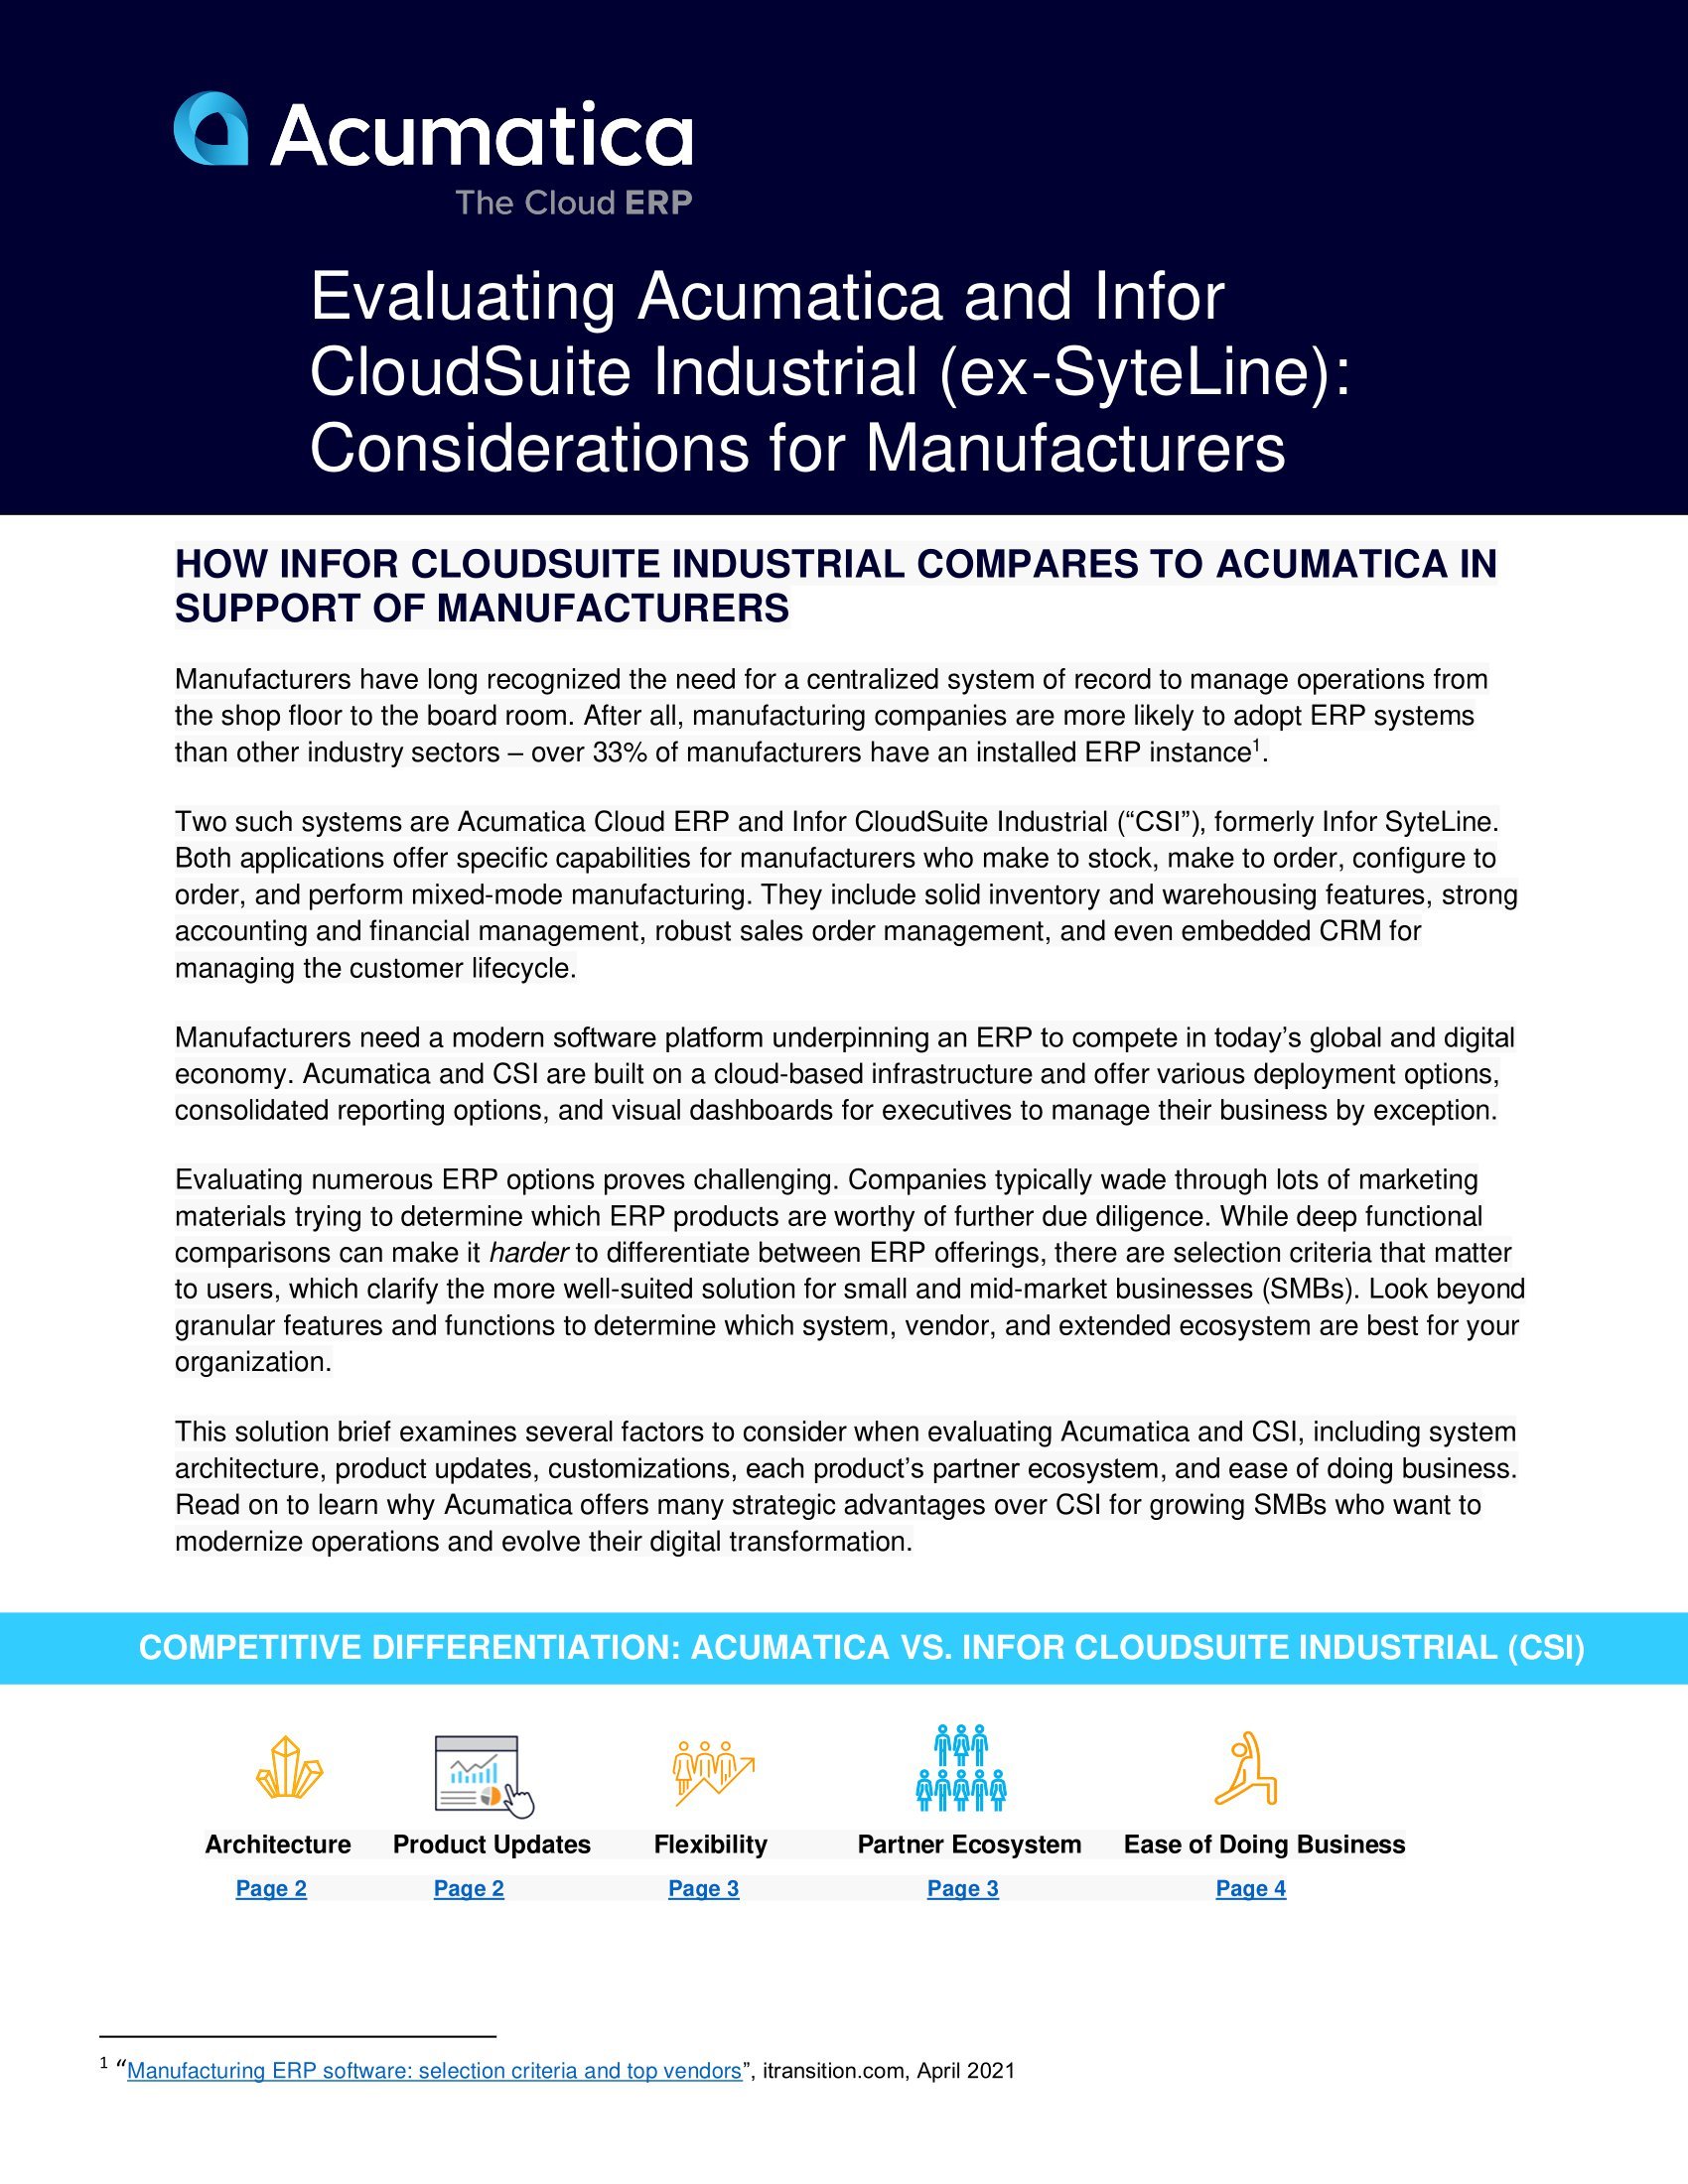 Acumatica vs. Infor CloudSuite Industrial: ¿Qué sistema ERP deben elegir los fabricantes?